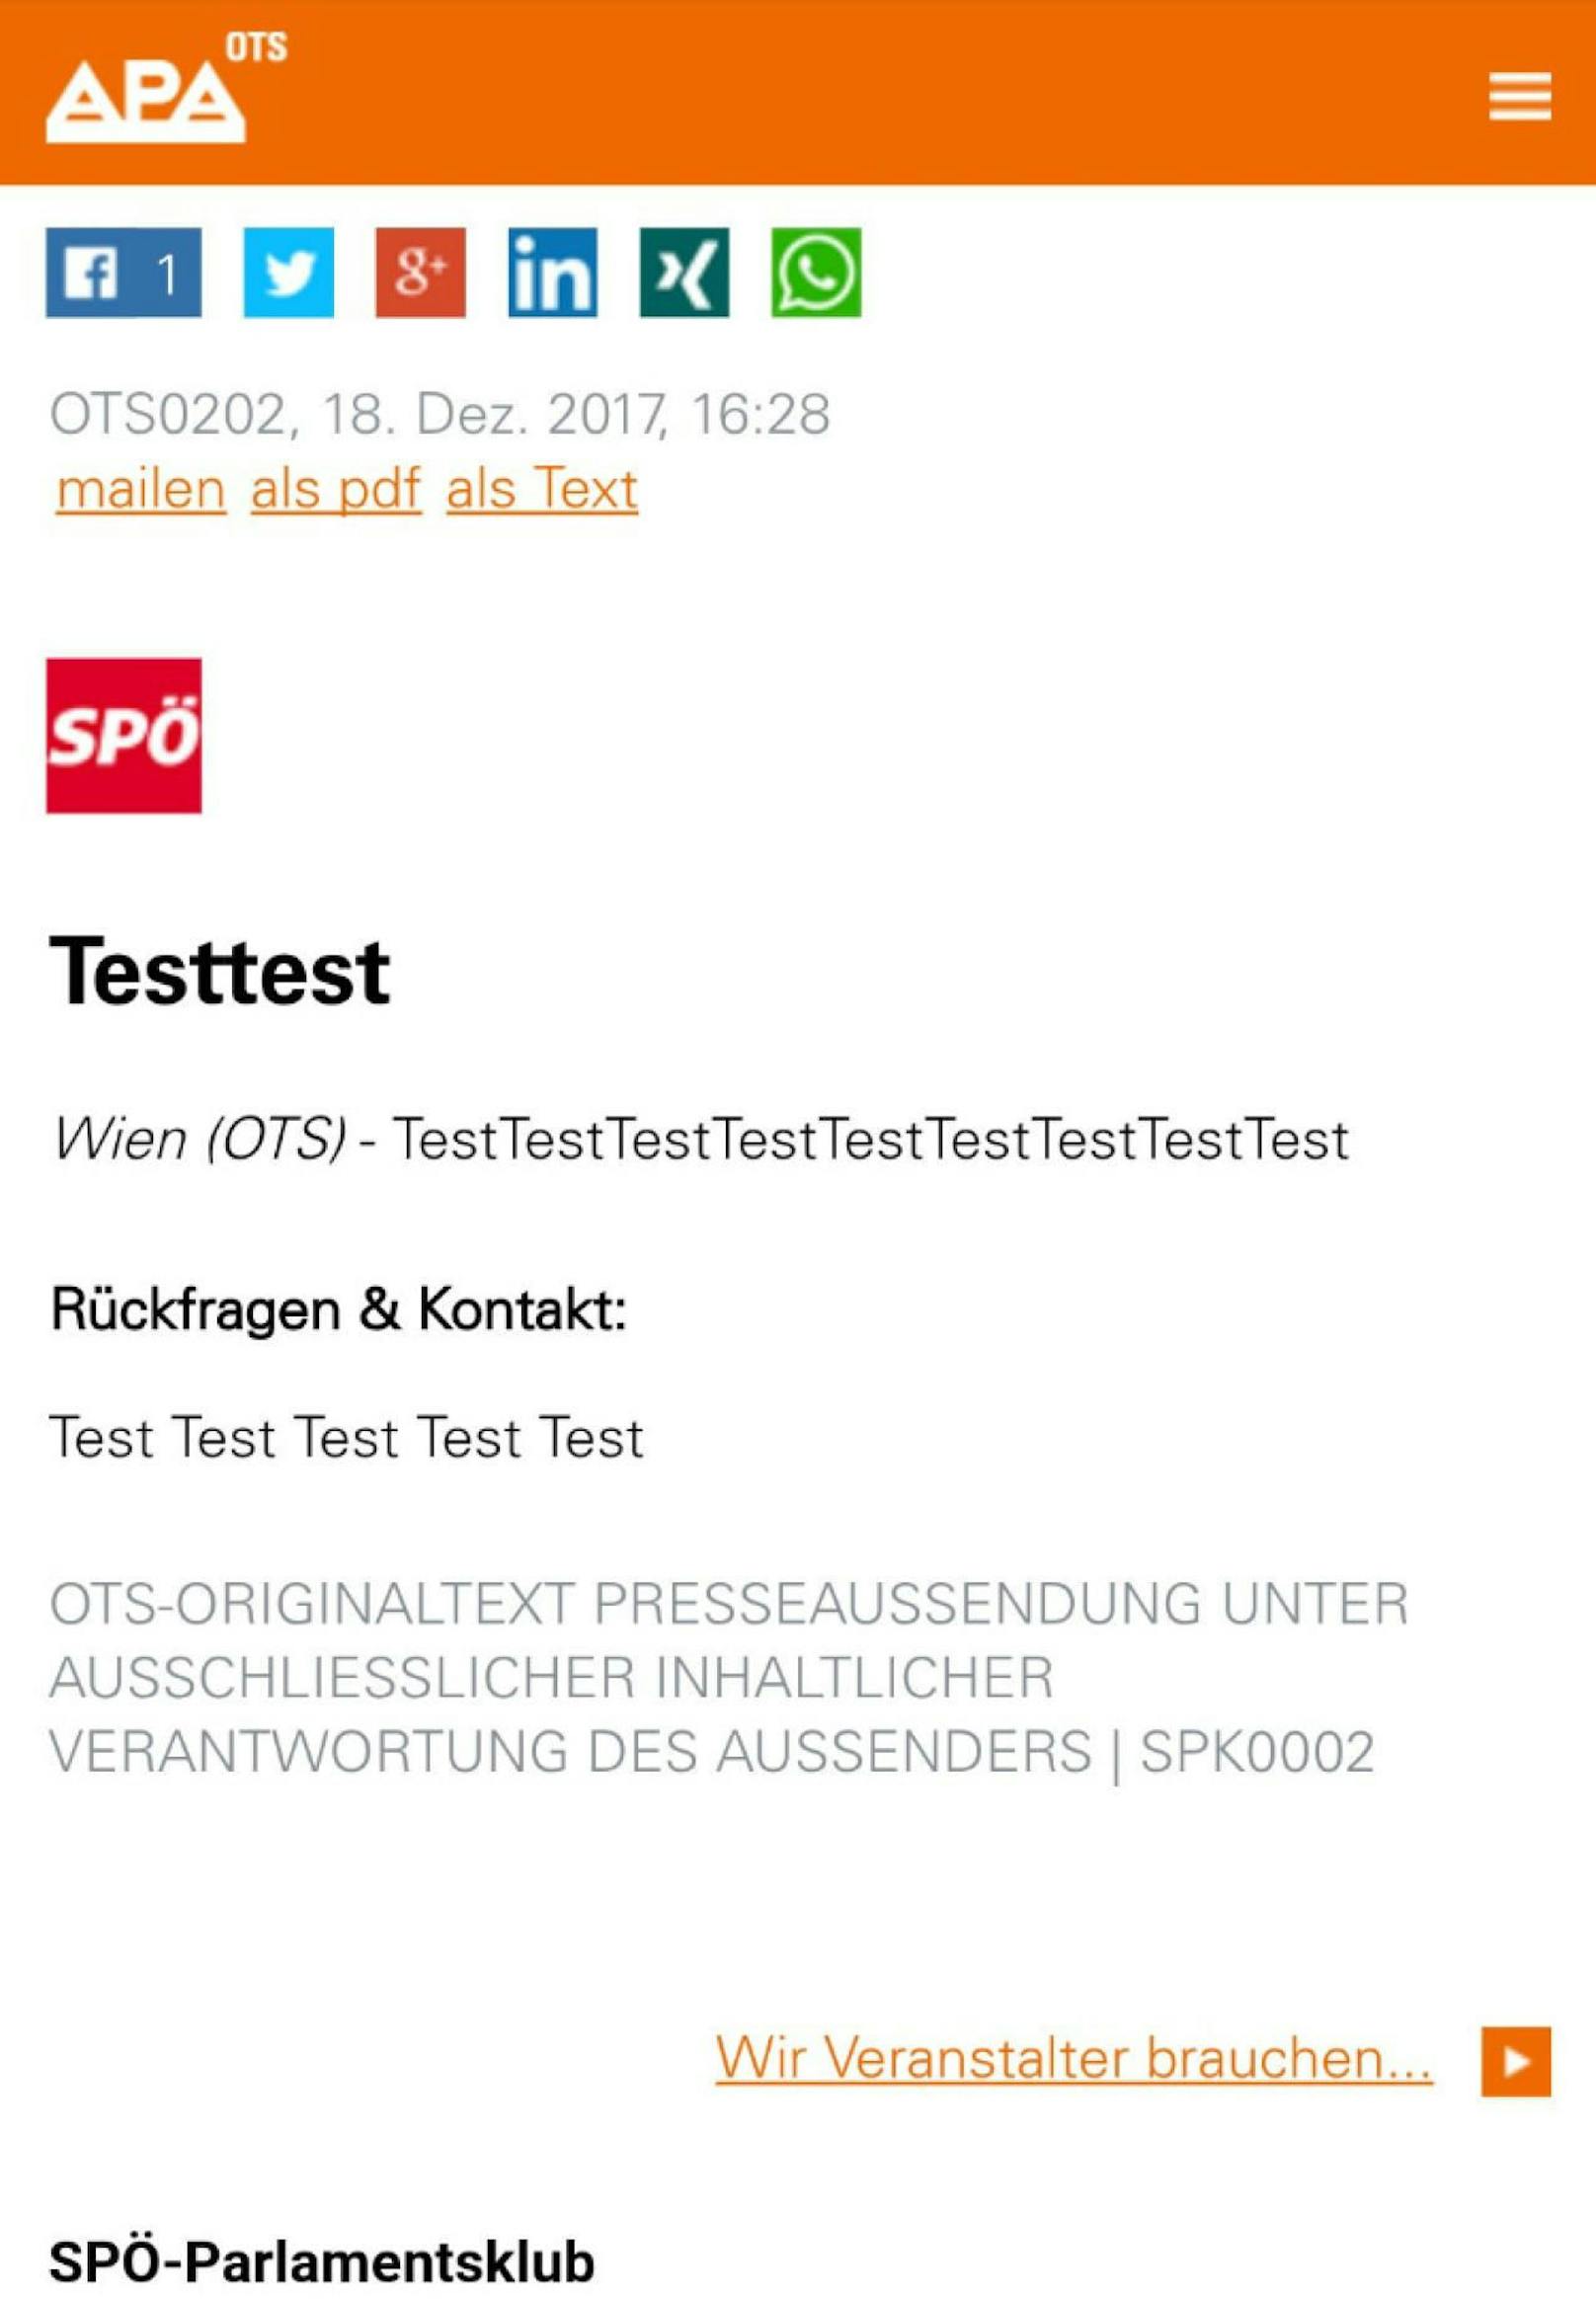 SPÖ "testete" am Montag schon Oppositionsarbeit